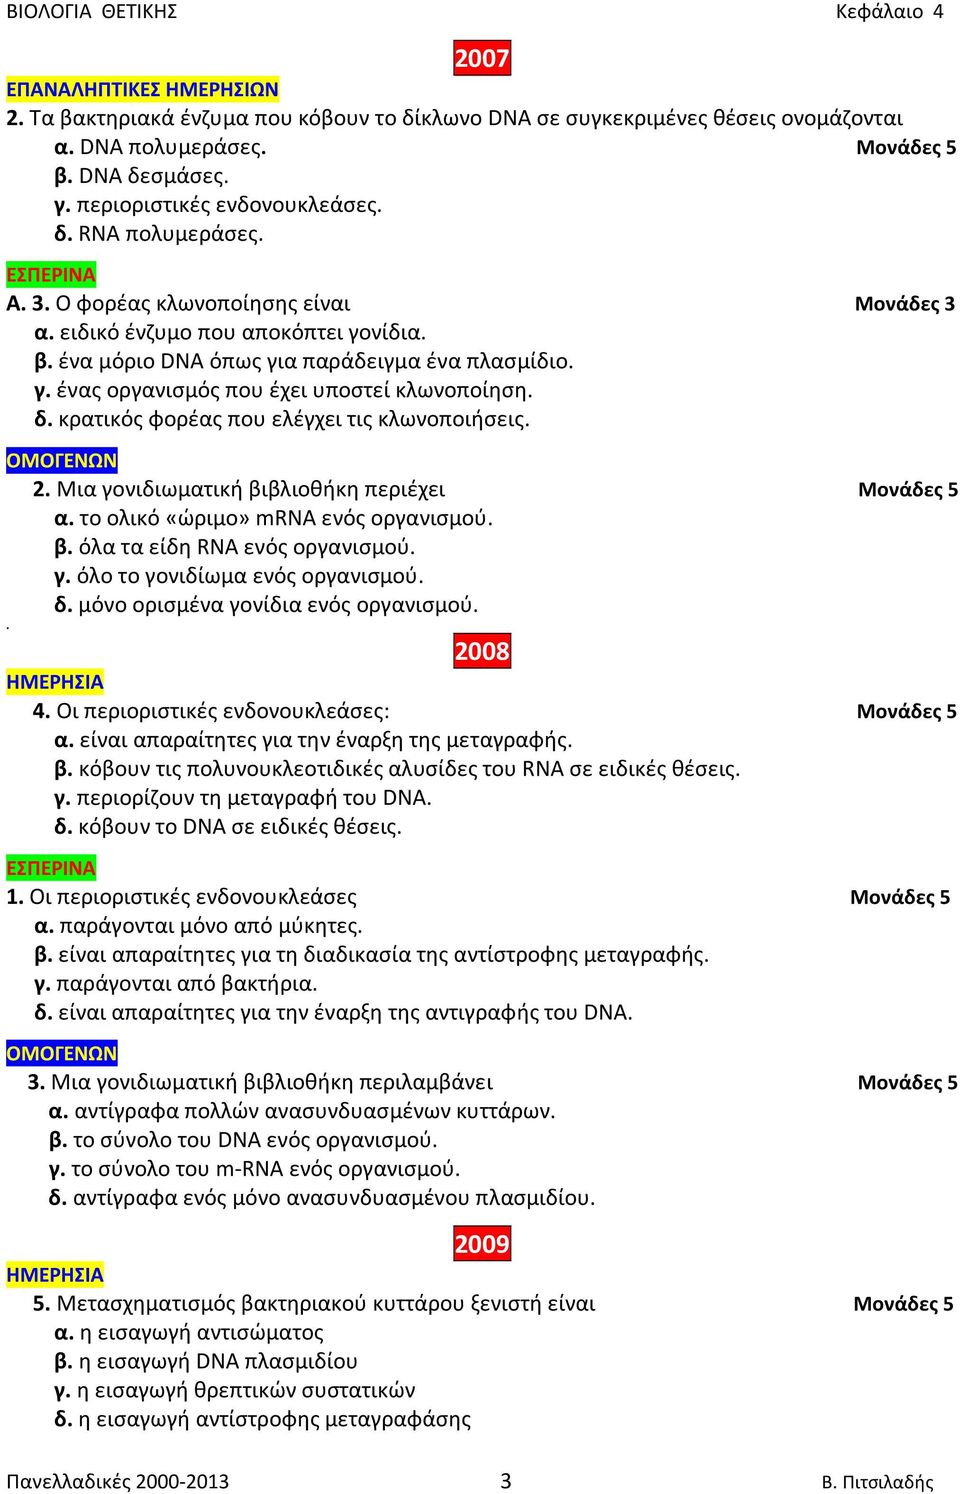 κρατικός φορέας που ελέγχει τις κλωνοποιήσεις. 2. Μια γονιδιωματική βιβλιοθήκη περιέχει Μονάδες 5 α. το ολικό «ώριμο» mrna ενός οργανισμού. β. όλα τα είδη RNA ενός οργανισμού. γ. όλο το γονιδίωμα ενός οργανισμού.